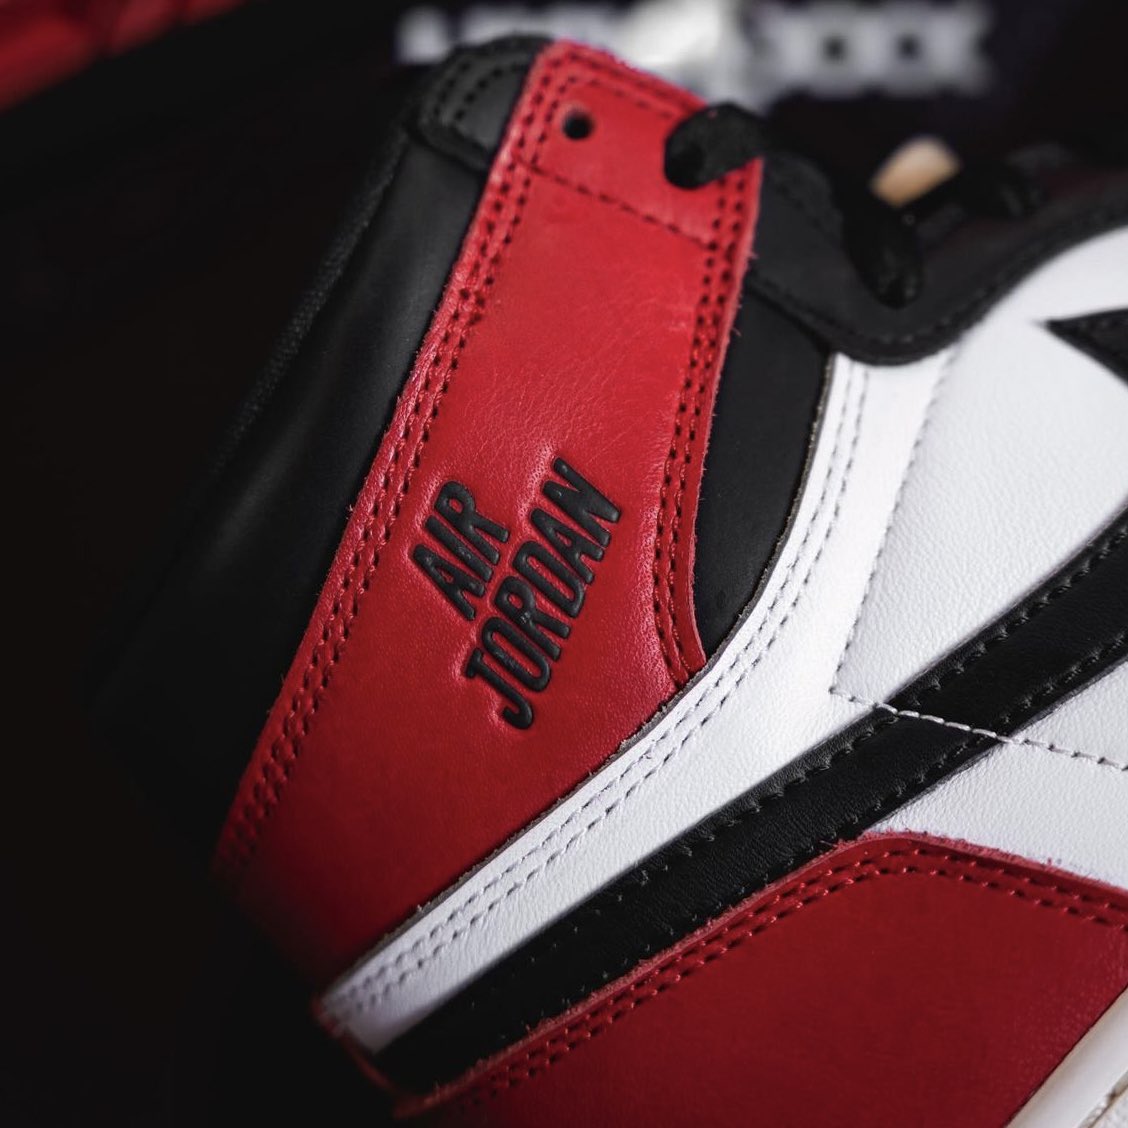 Air Jordan 1 High OG 'Black Toe Reimagined'⚫️🔴

最強カラー🔥🔥

📸：knowing_kicks